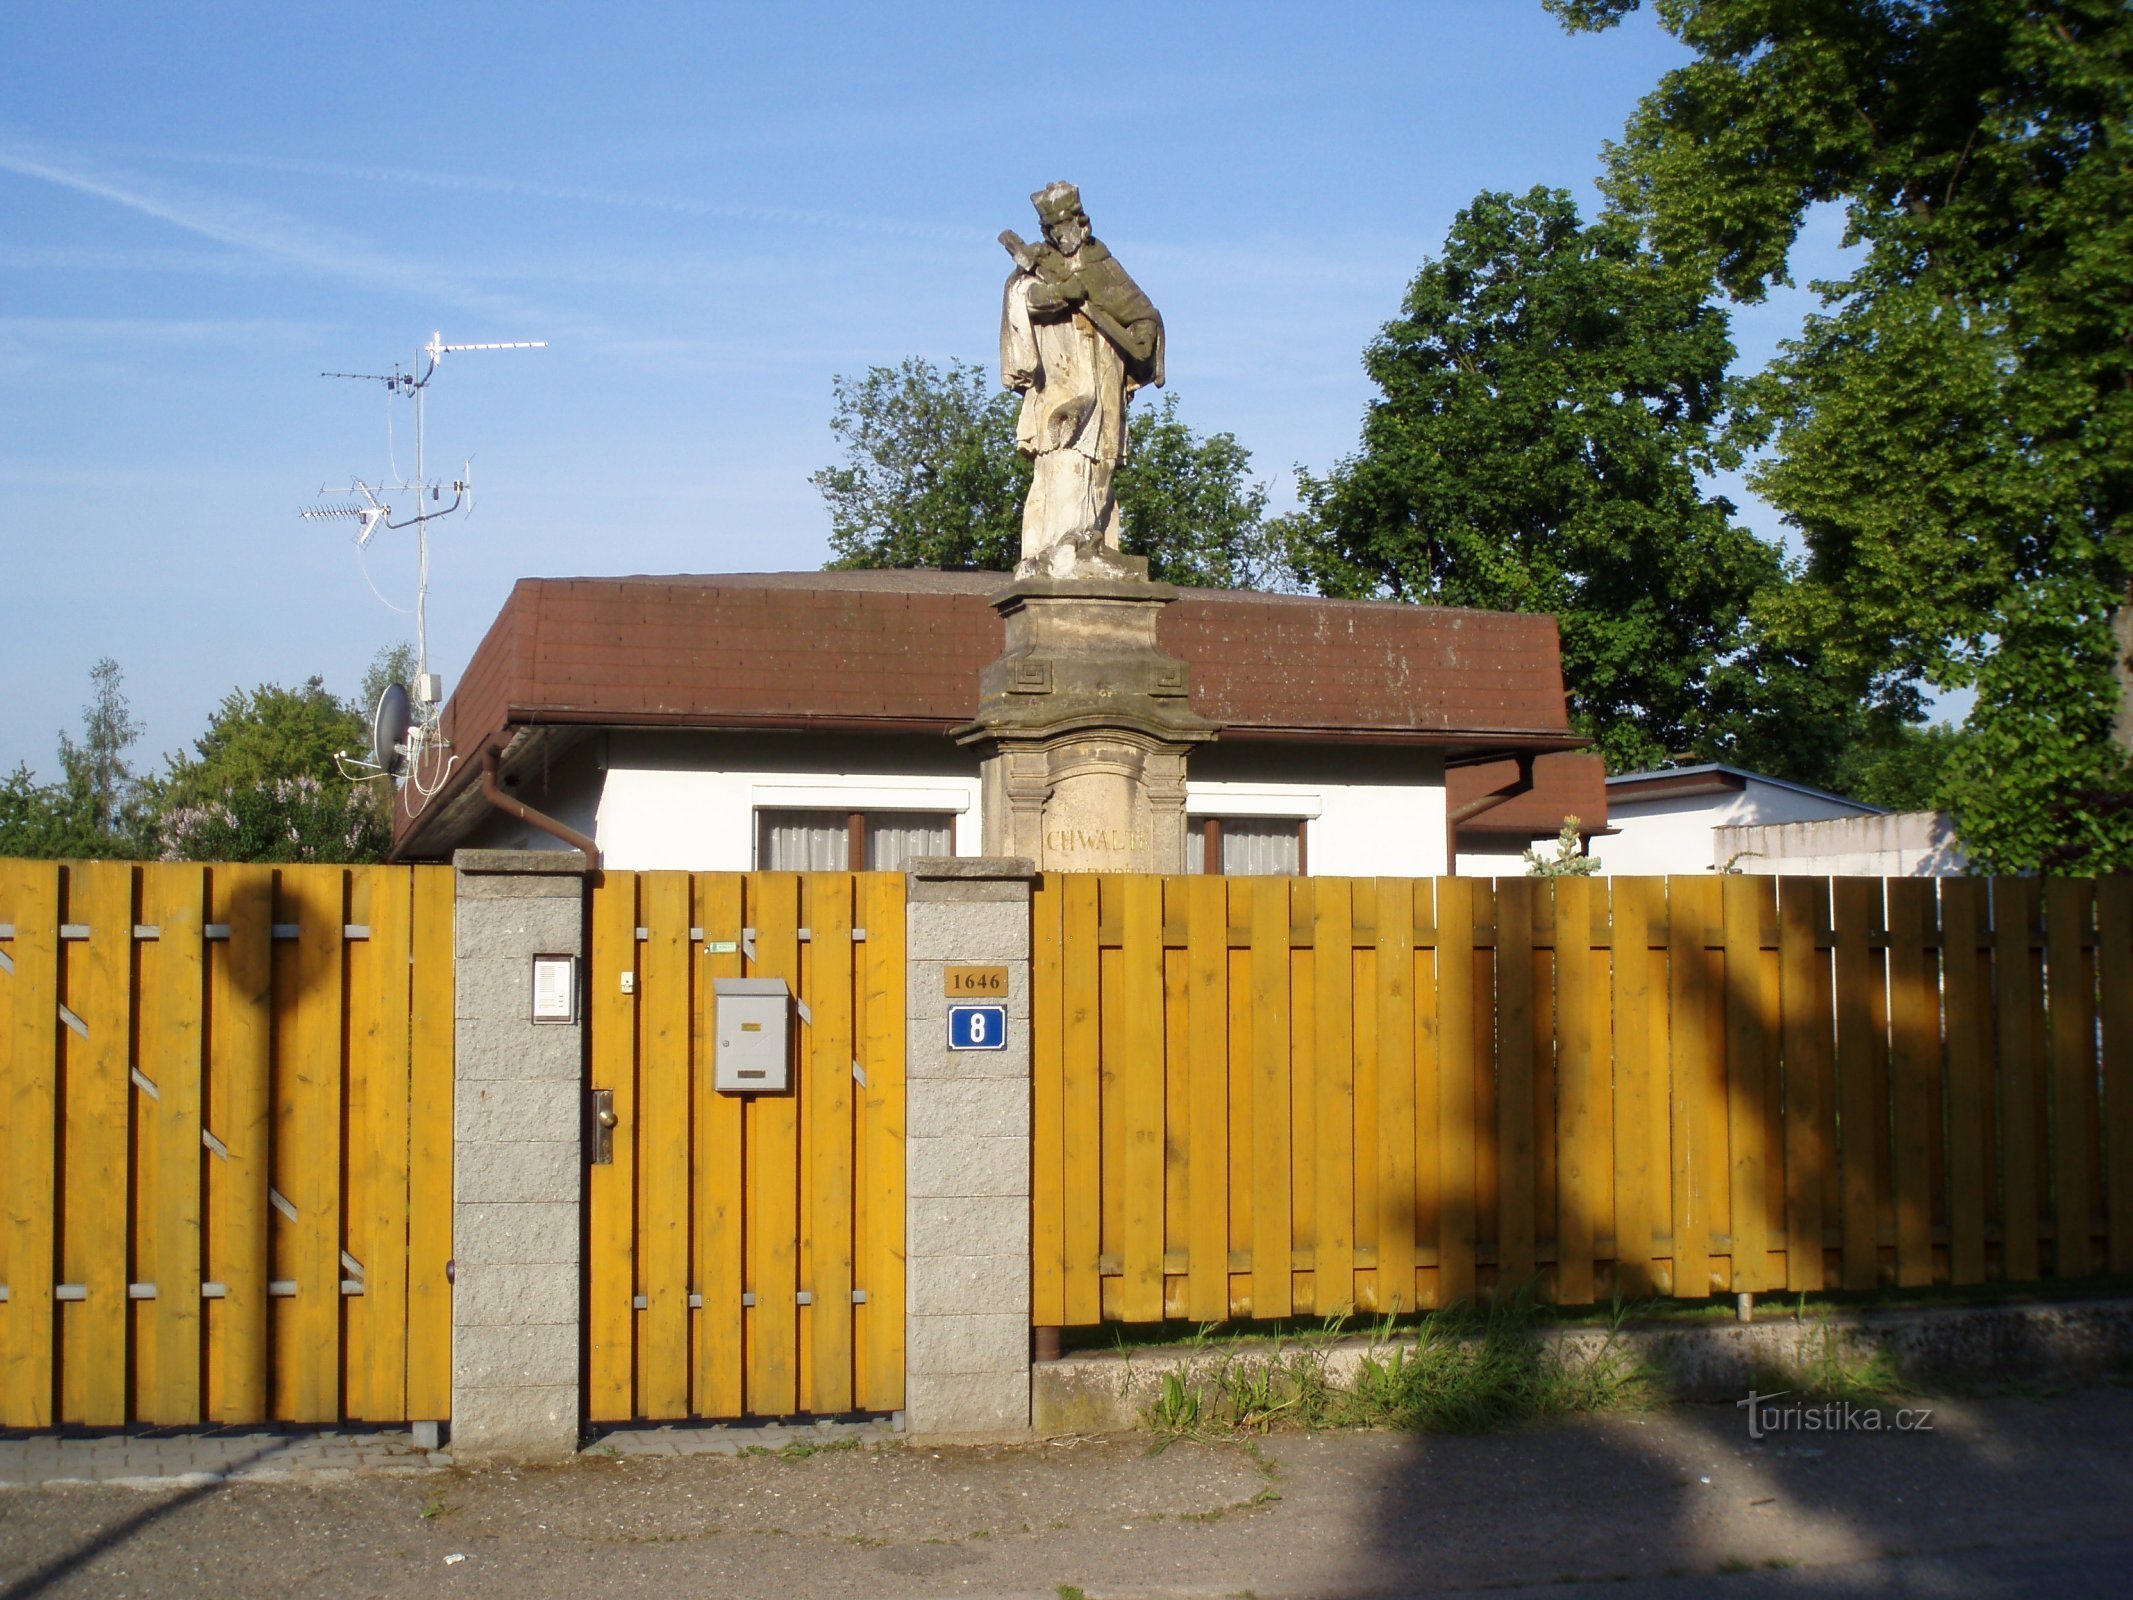 Staty av St. Jan Nepomucký på gatan Medková (Hradec Králové, 11.5.2011)